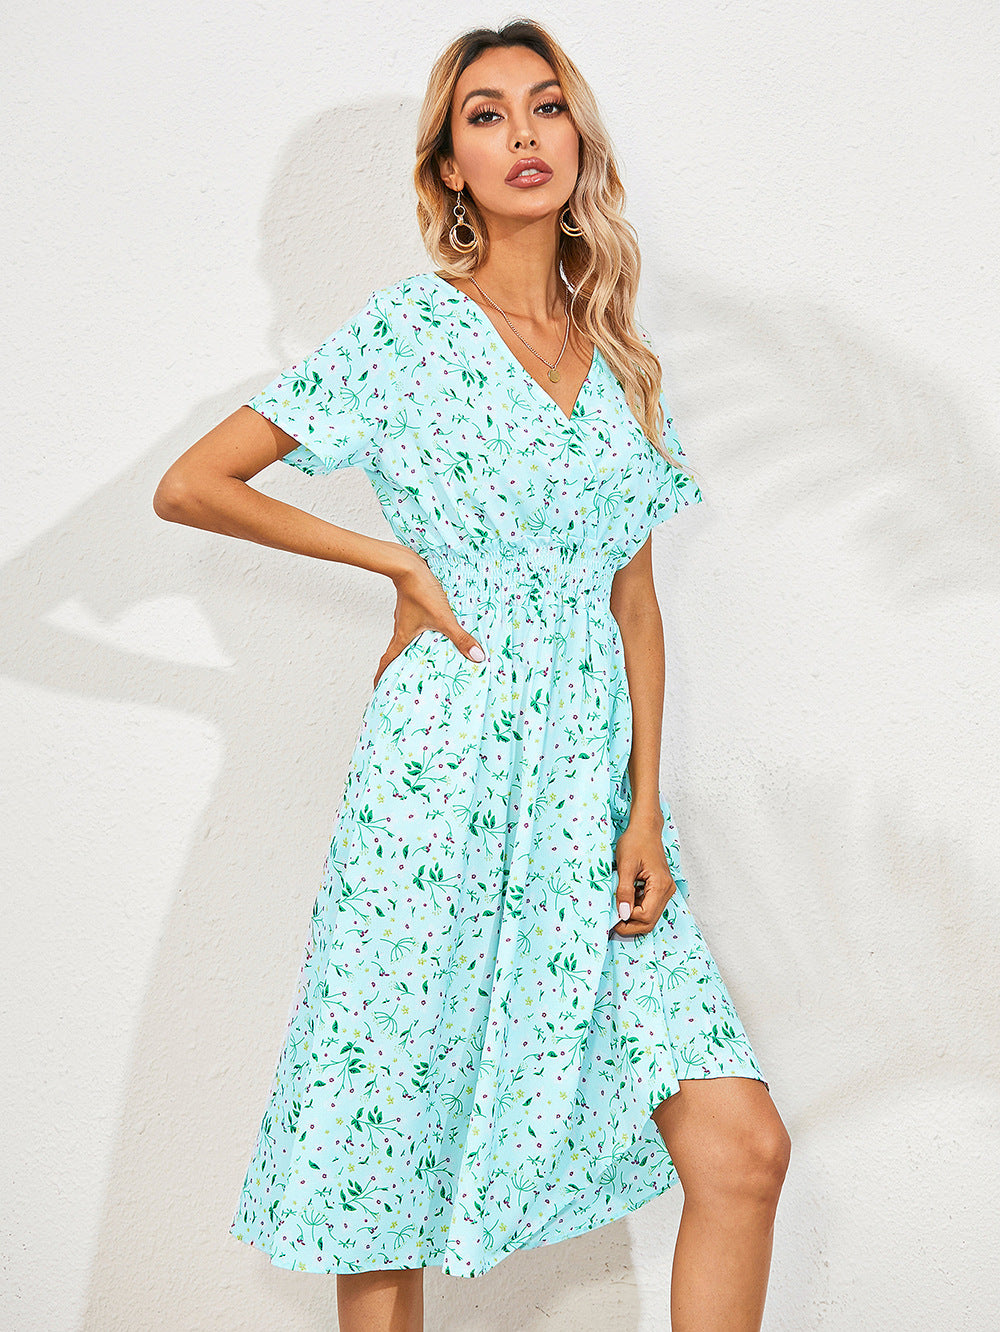 Women's Summer Floral Print Sleeve Dress Dresses